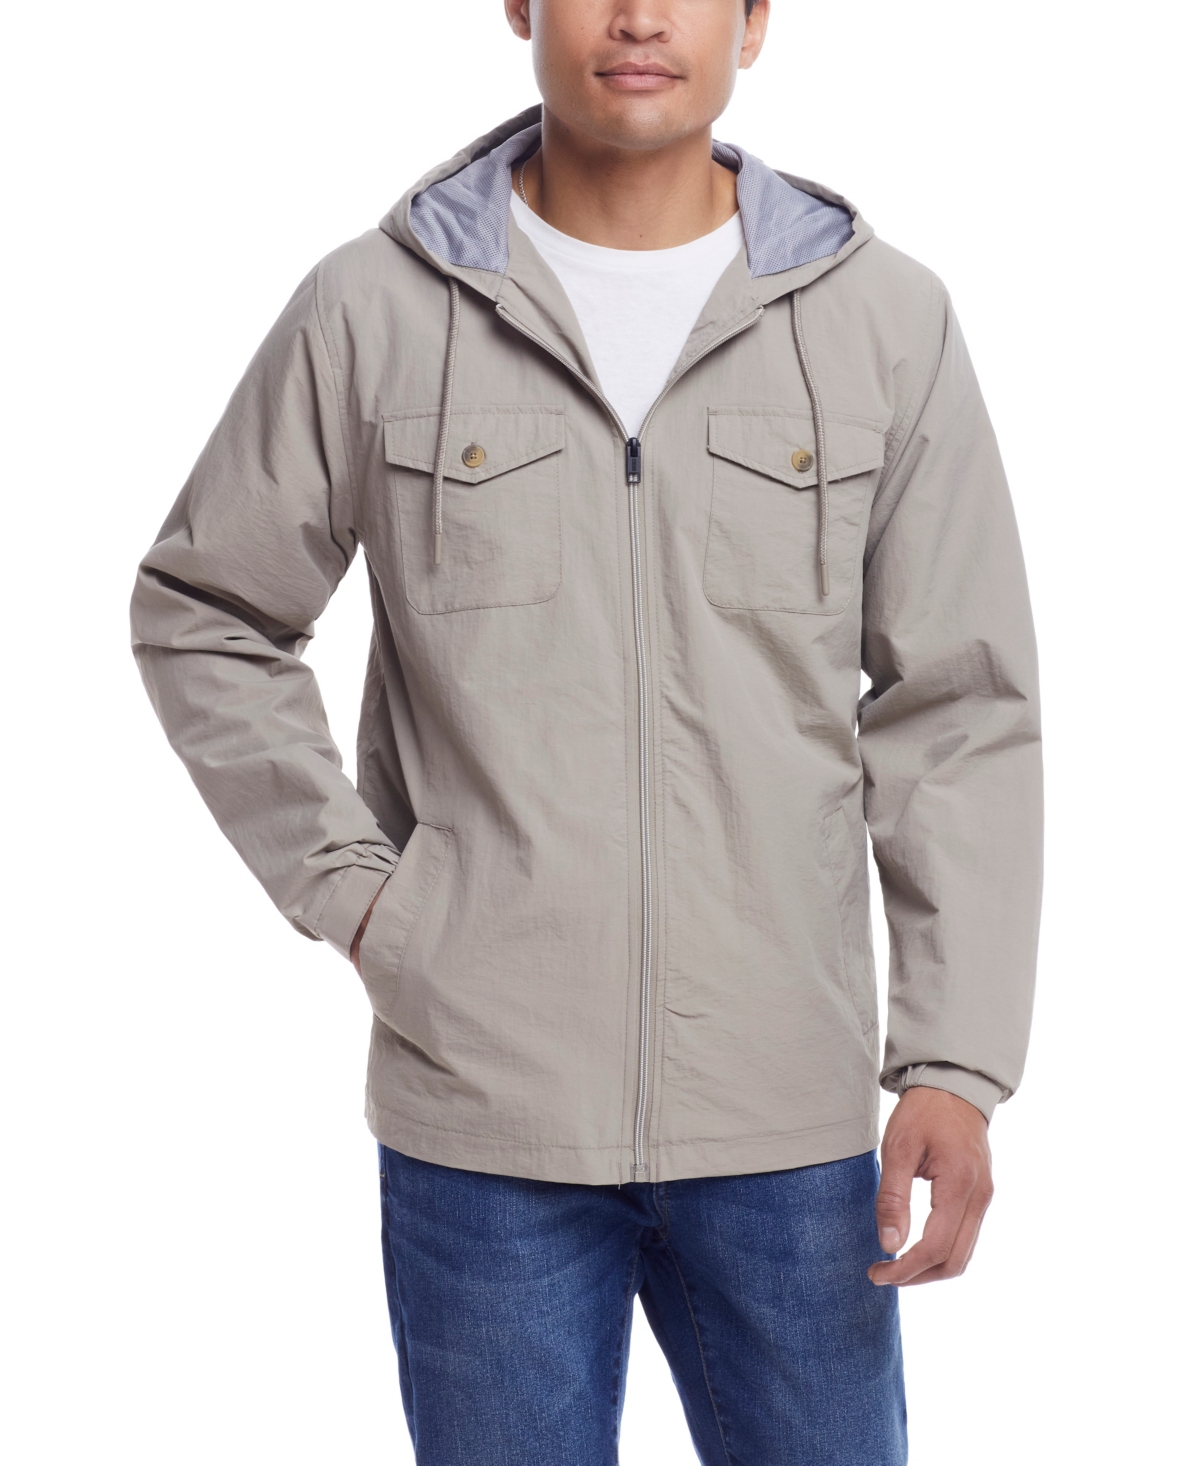 Men's Nylon Zip Front Hooded Jacket - Navy